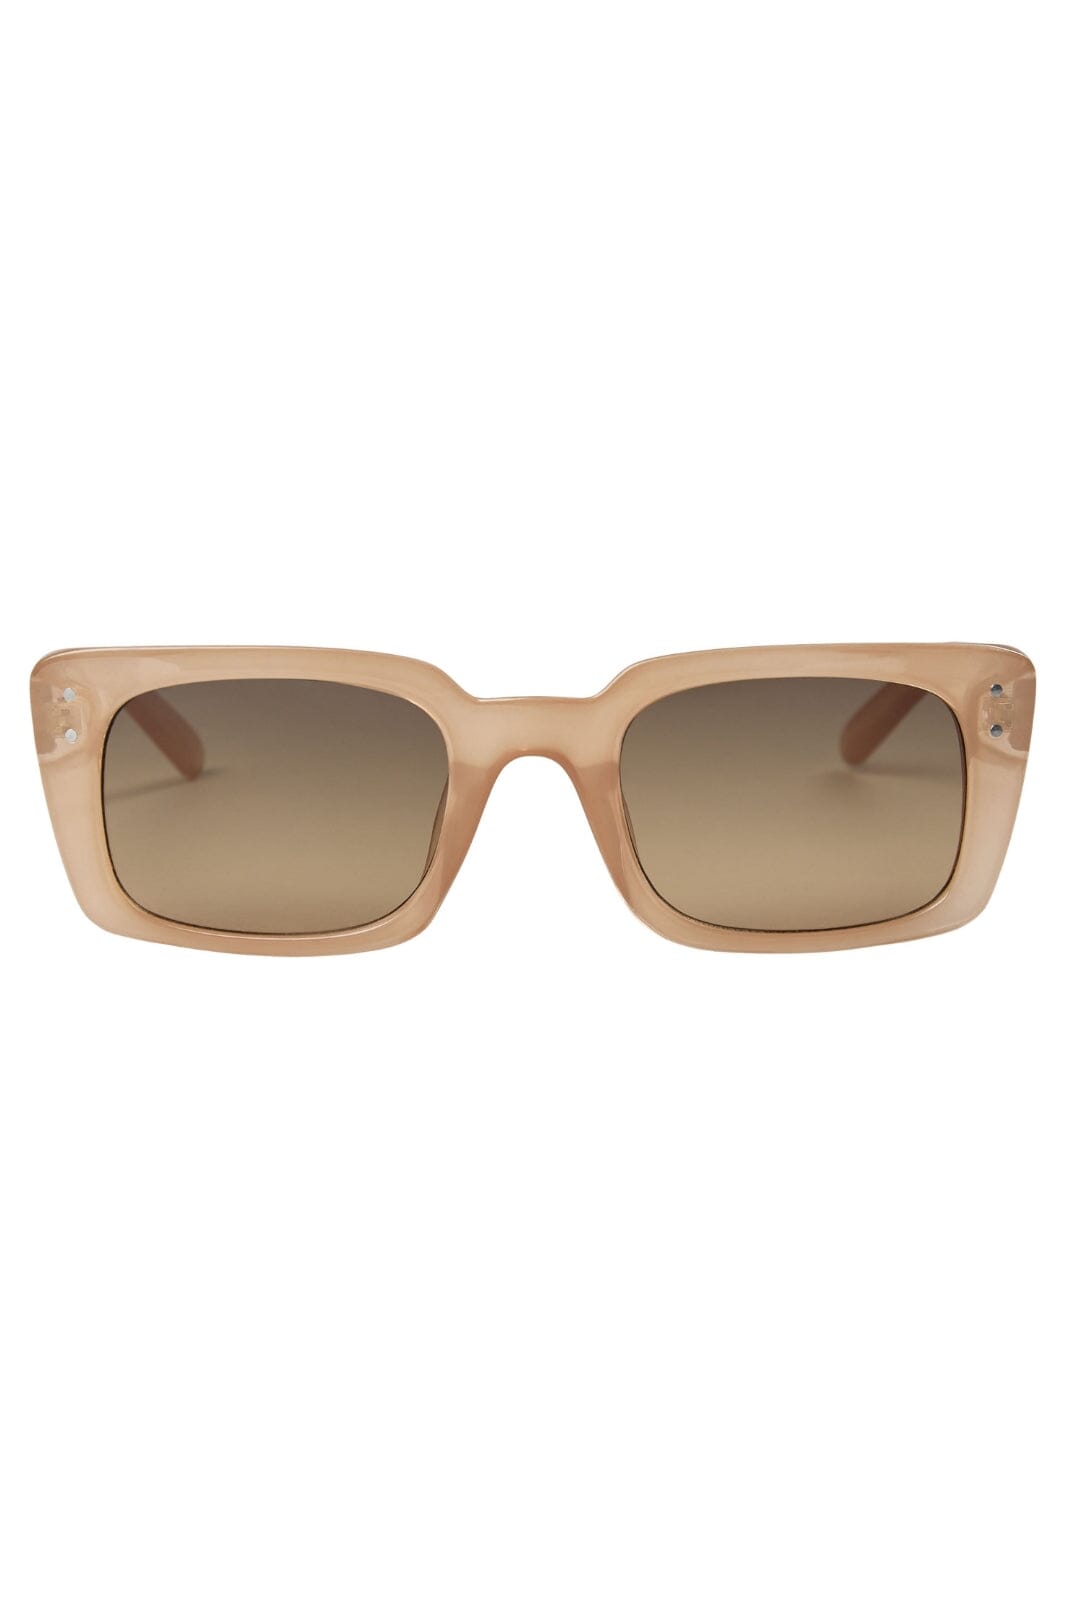 Sofie Schnoor - S241900 Sunglasses - Cream Solbriller 